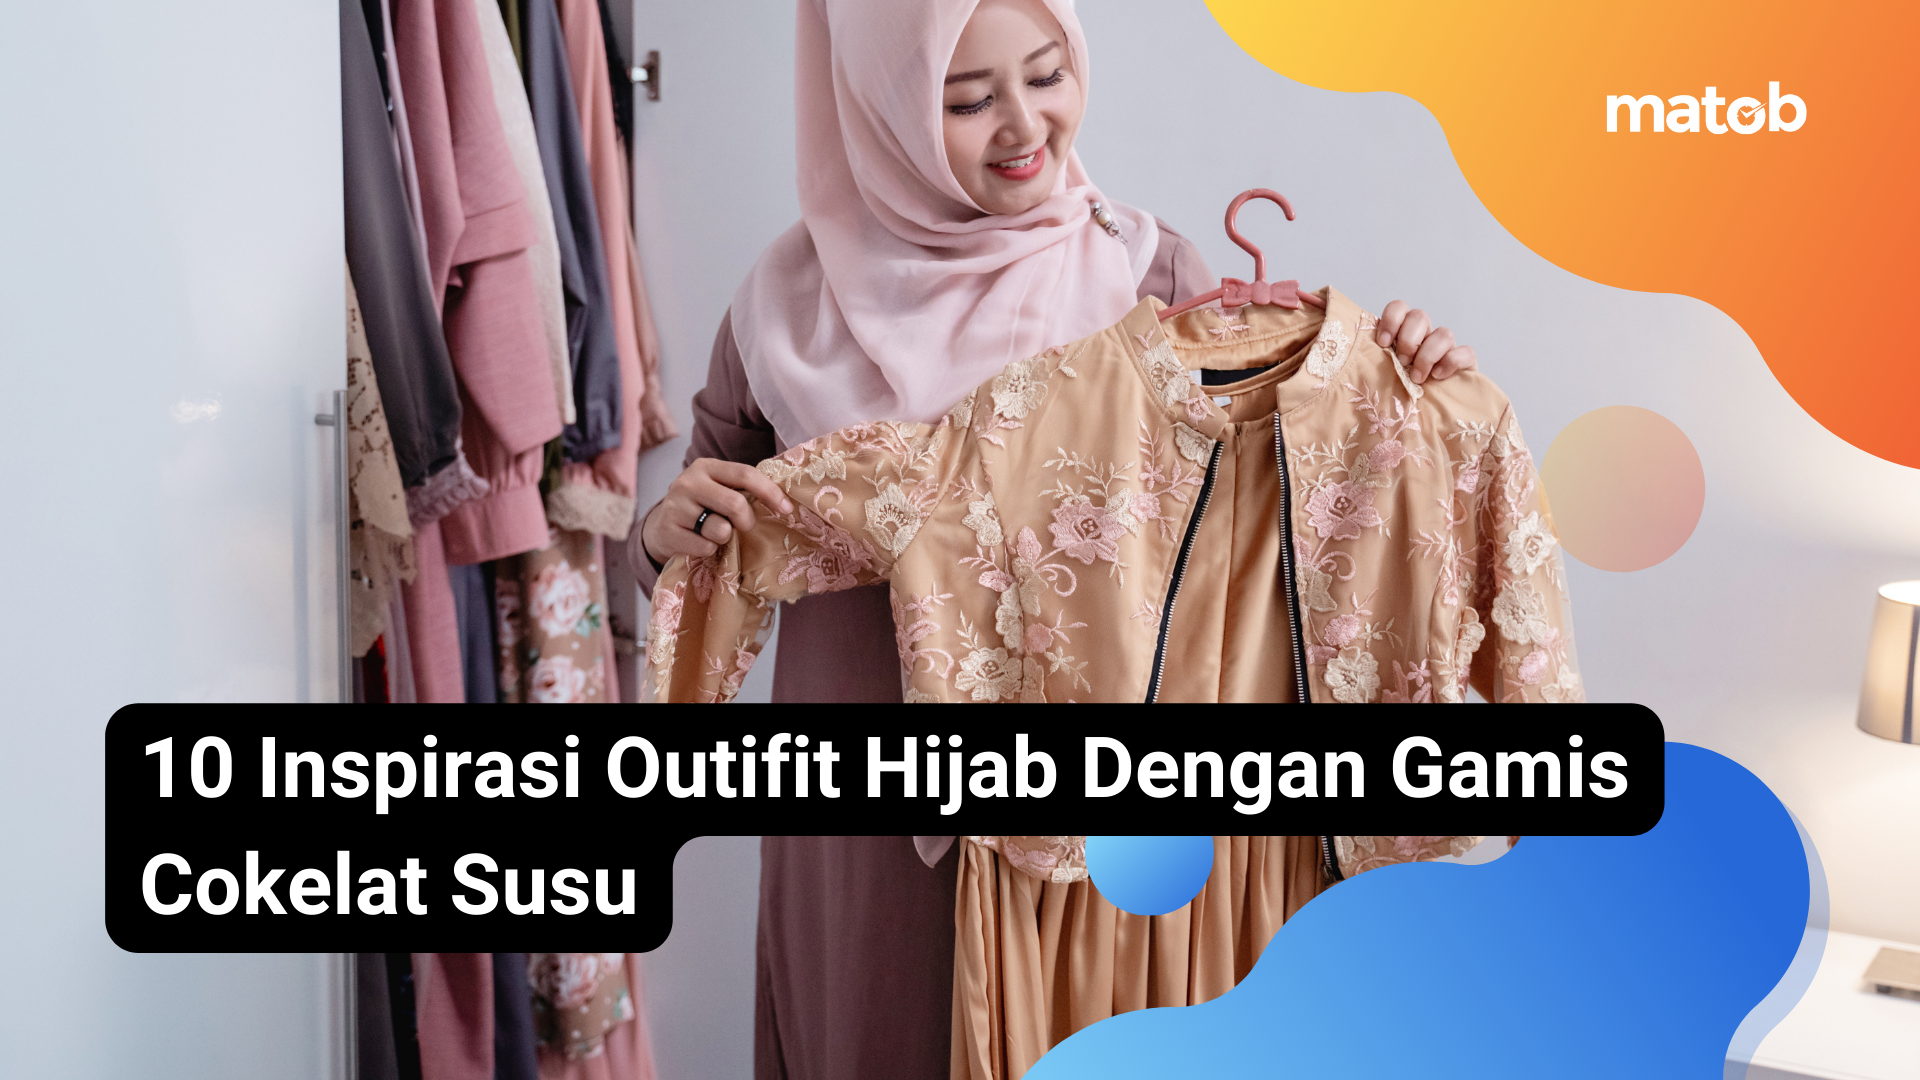 21 Matob Bisnis 10 Inspirasi Outifit Hijab Dengan Gamis Cokelat Susu